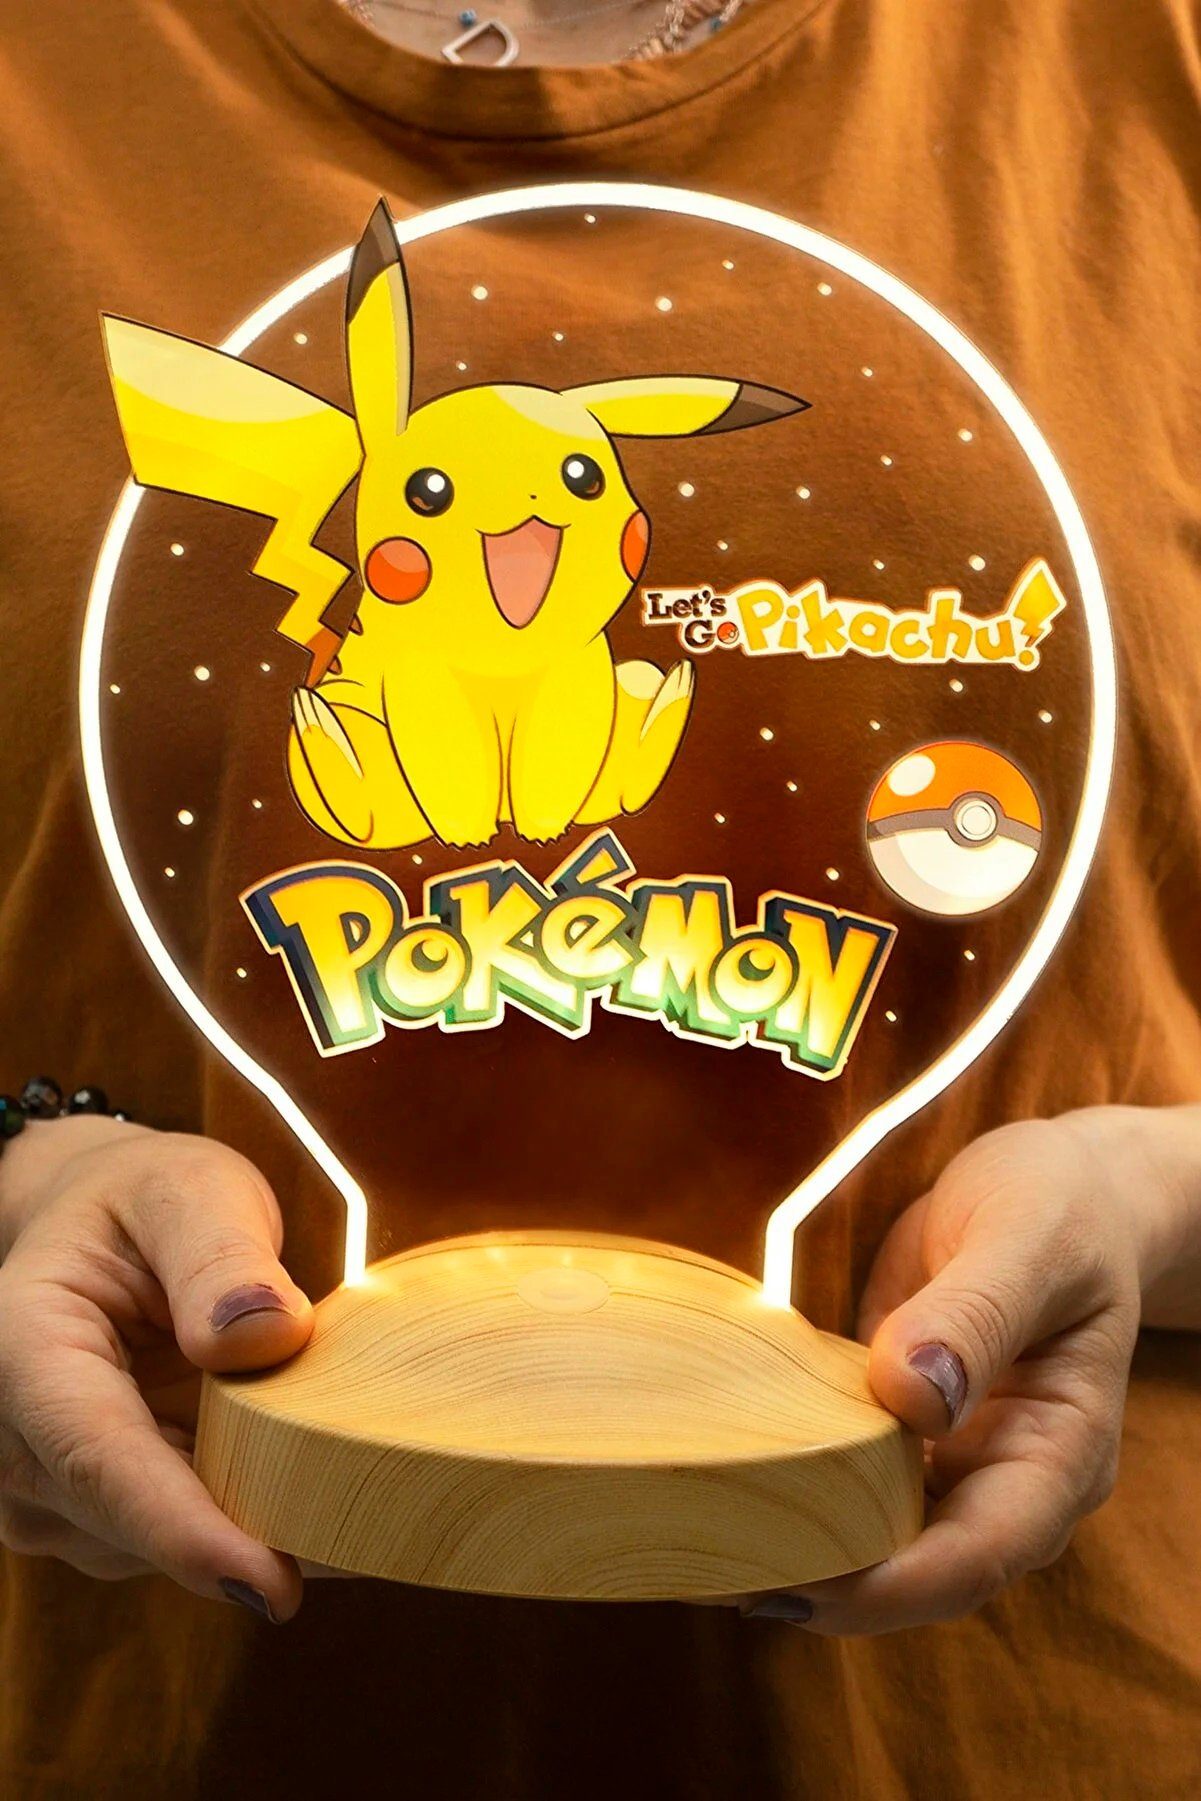 Dekor, Farben fest für Fans Geschenkelampe LED integriert, Weihnachtsgeschenk Pokemon Nachttischlampe 7 Mädchen, 3D Kinderzimmer Leuchte Pikachu für Jungen, Geschenk Nachtlicht